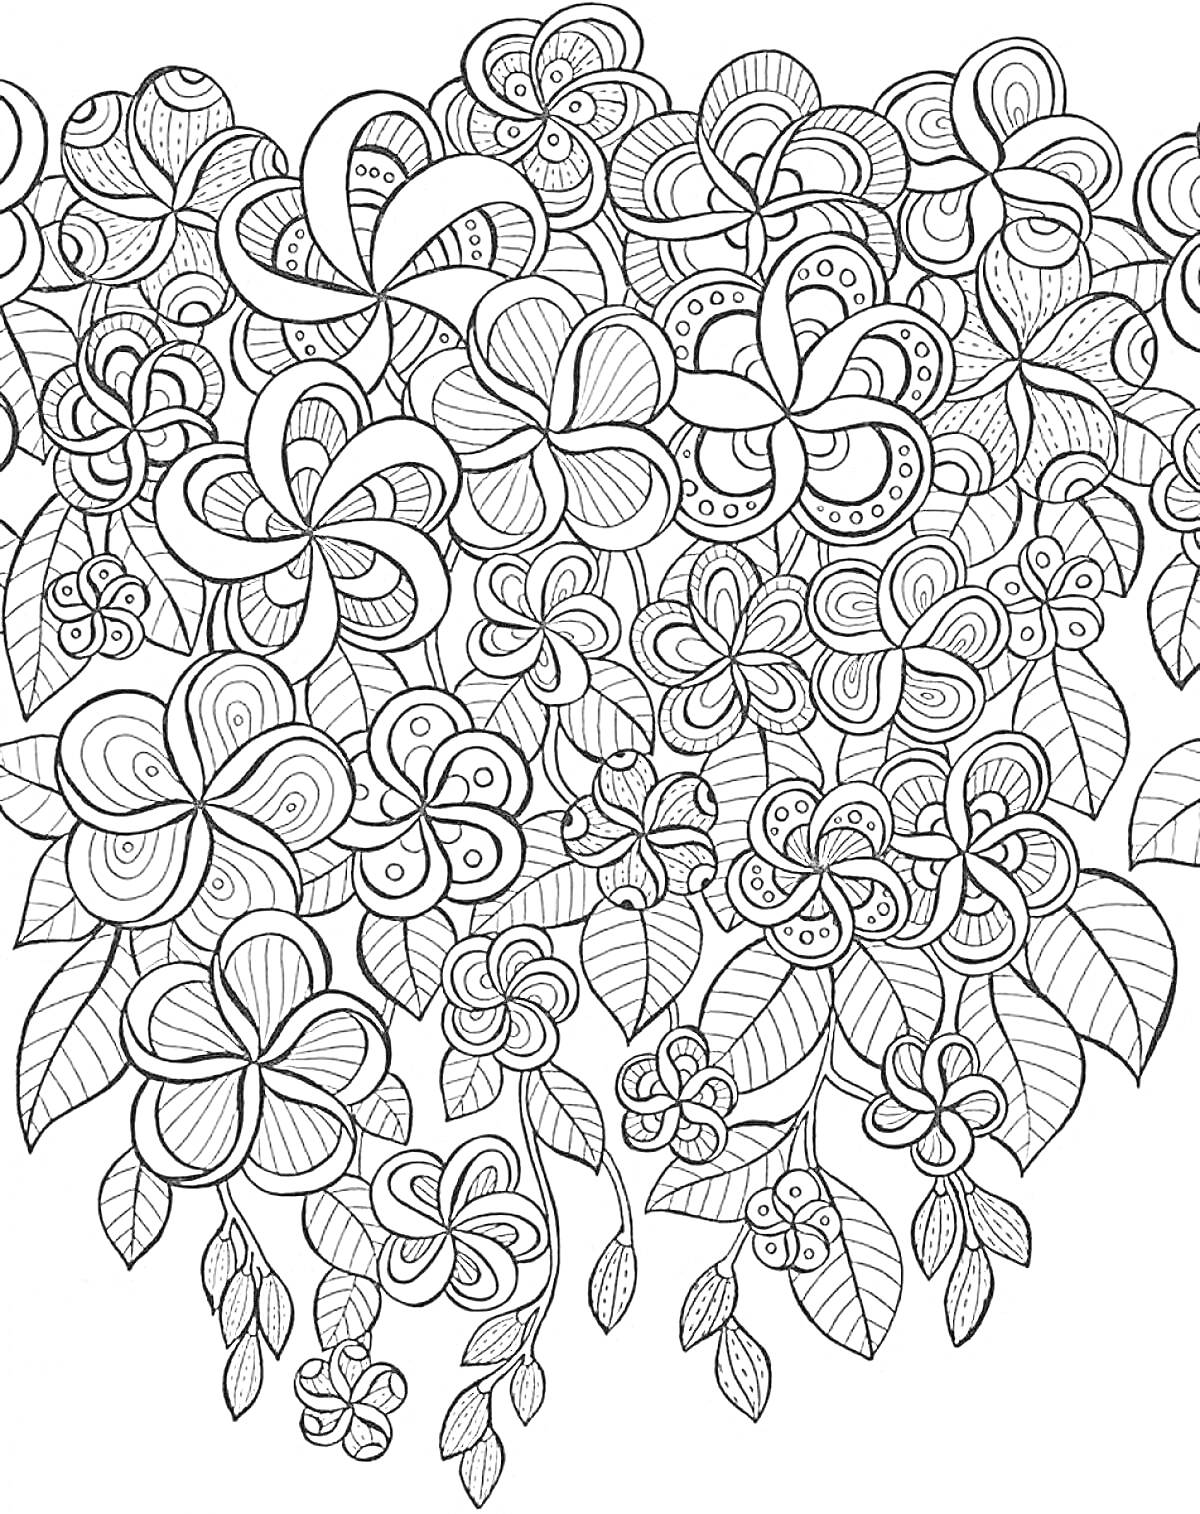 Раскраска Цветочная композиция с множеством цветов и листьев